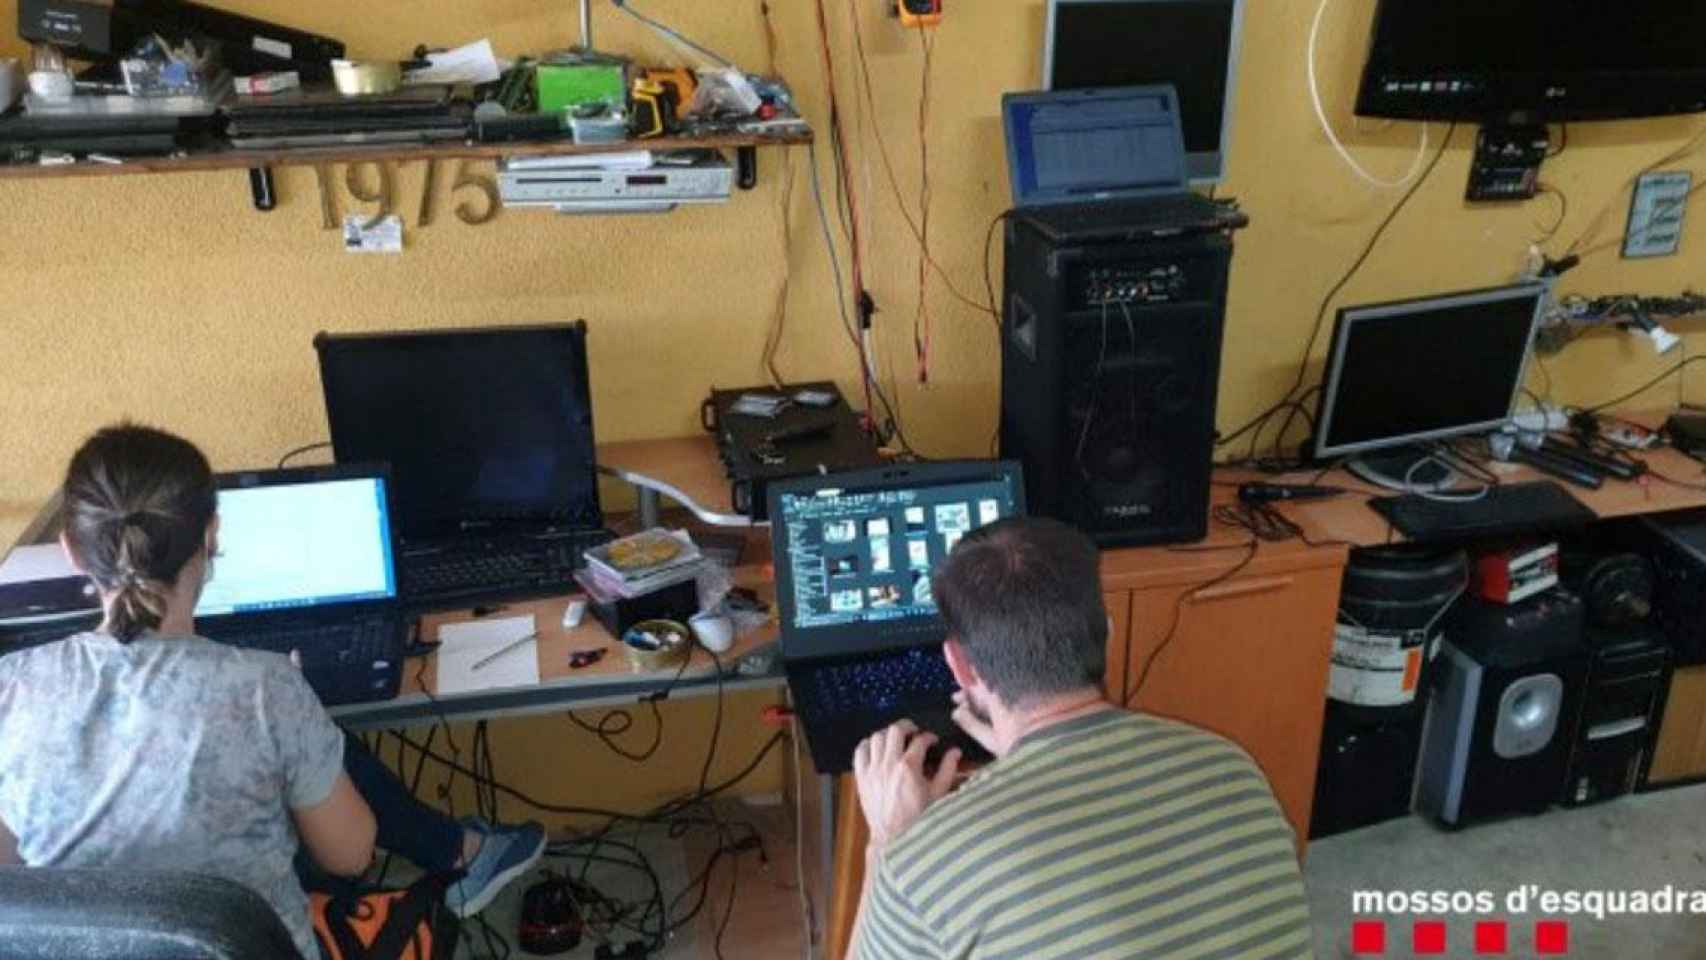 Policías investigan los dispositivos del informático detenido por espiar mujeres / MOSSOS